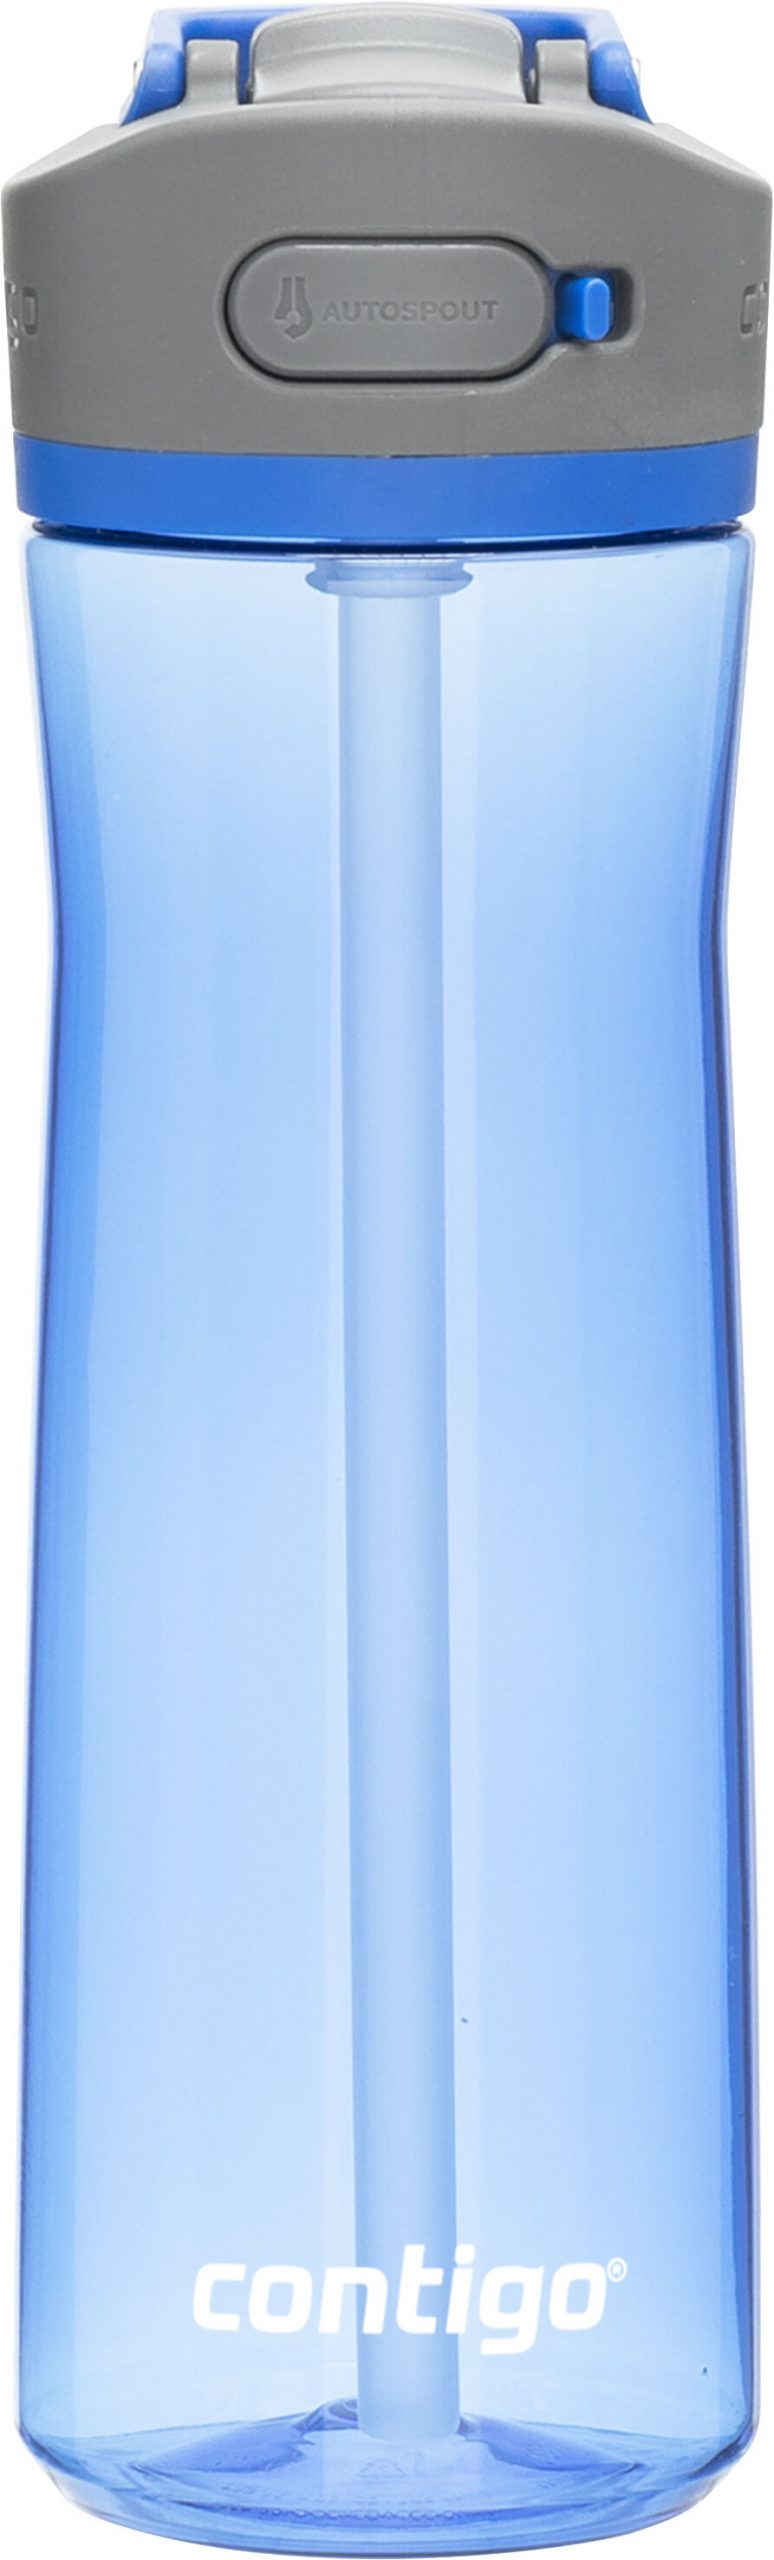 Custom Branded Contigo Drinkware - Blue